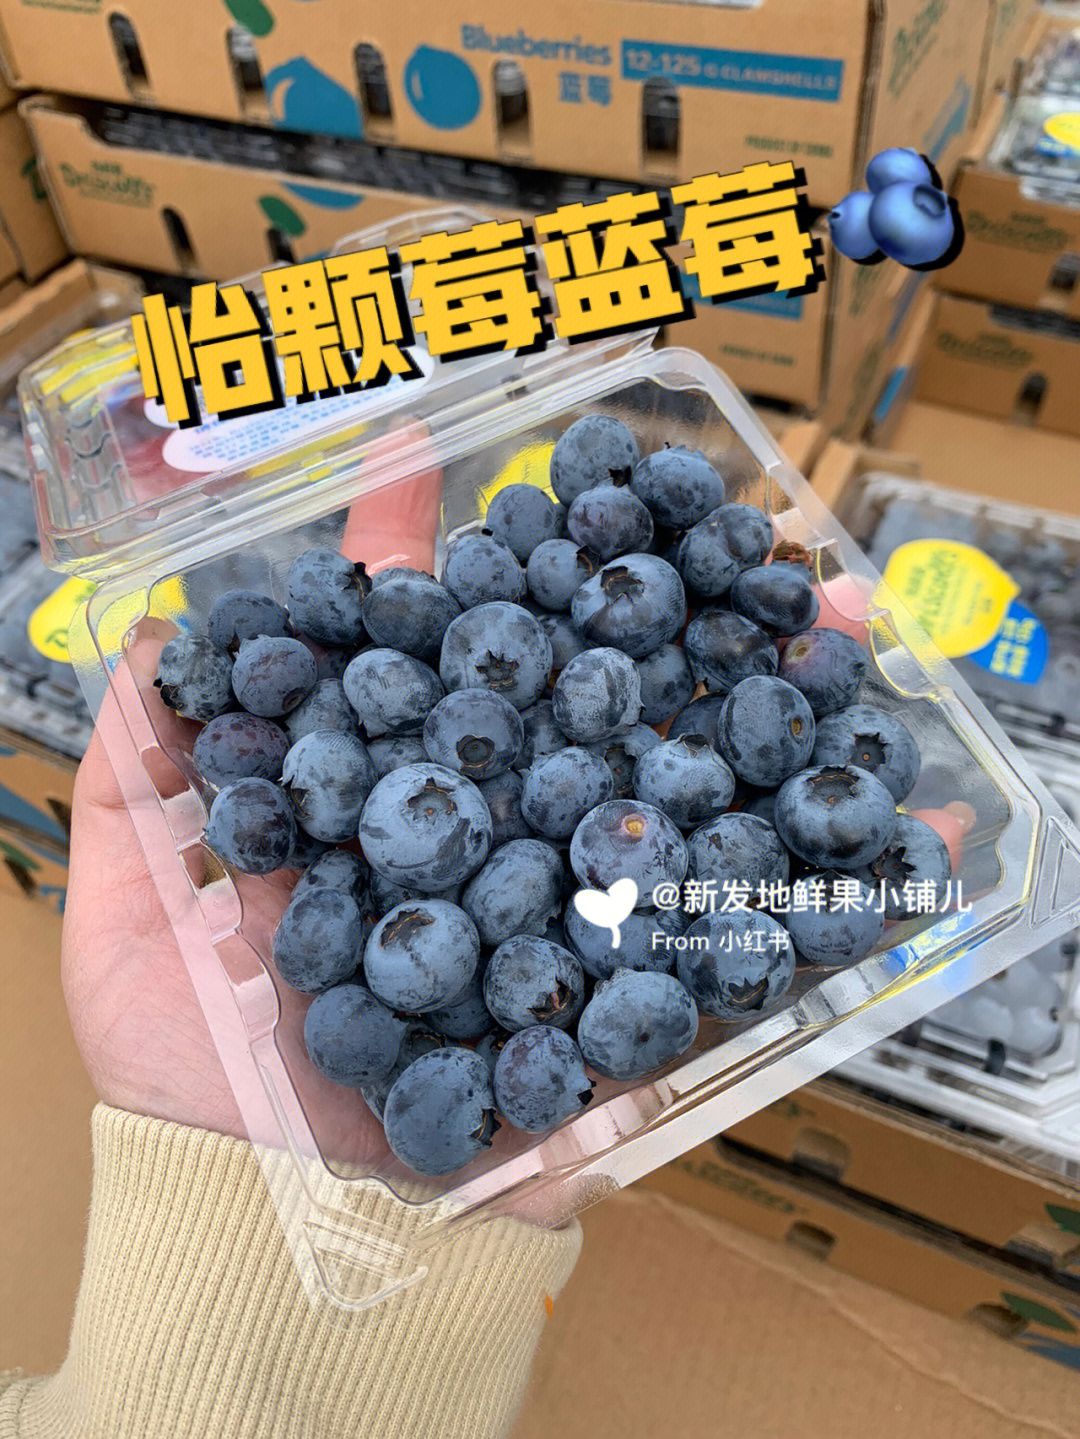 新发地水果之怡颗莓蓝莓08同城包邮